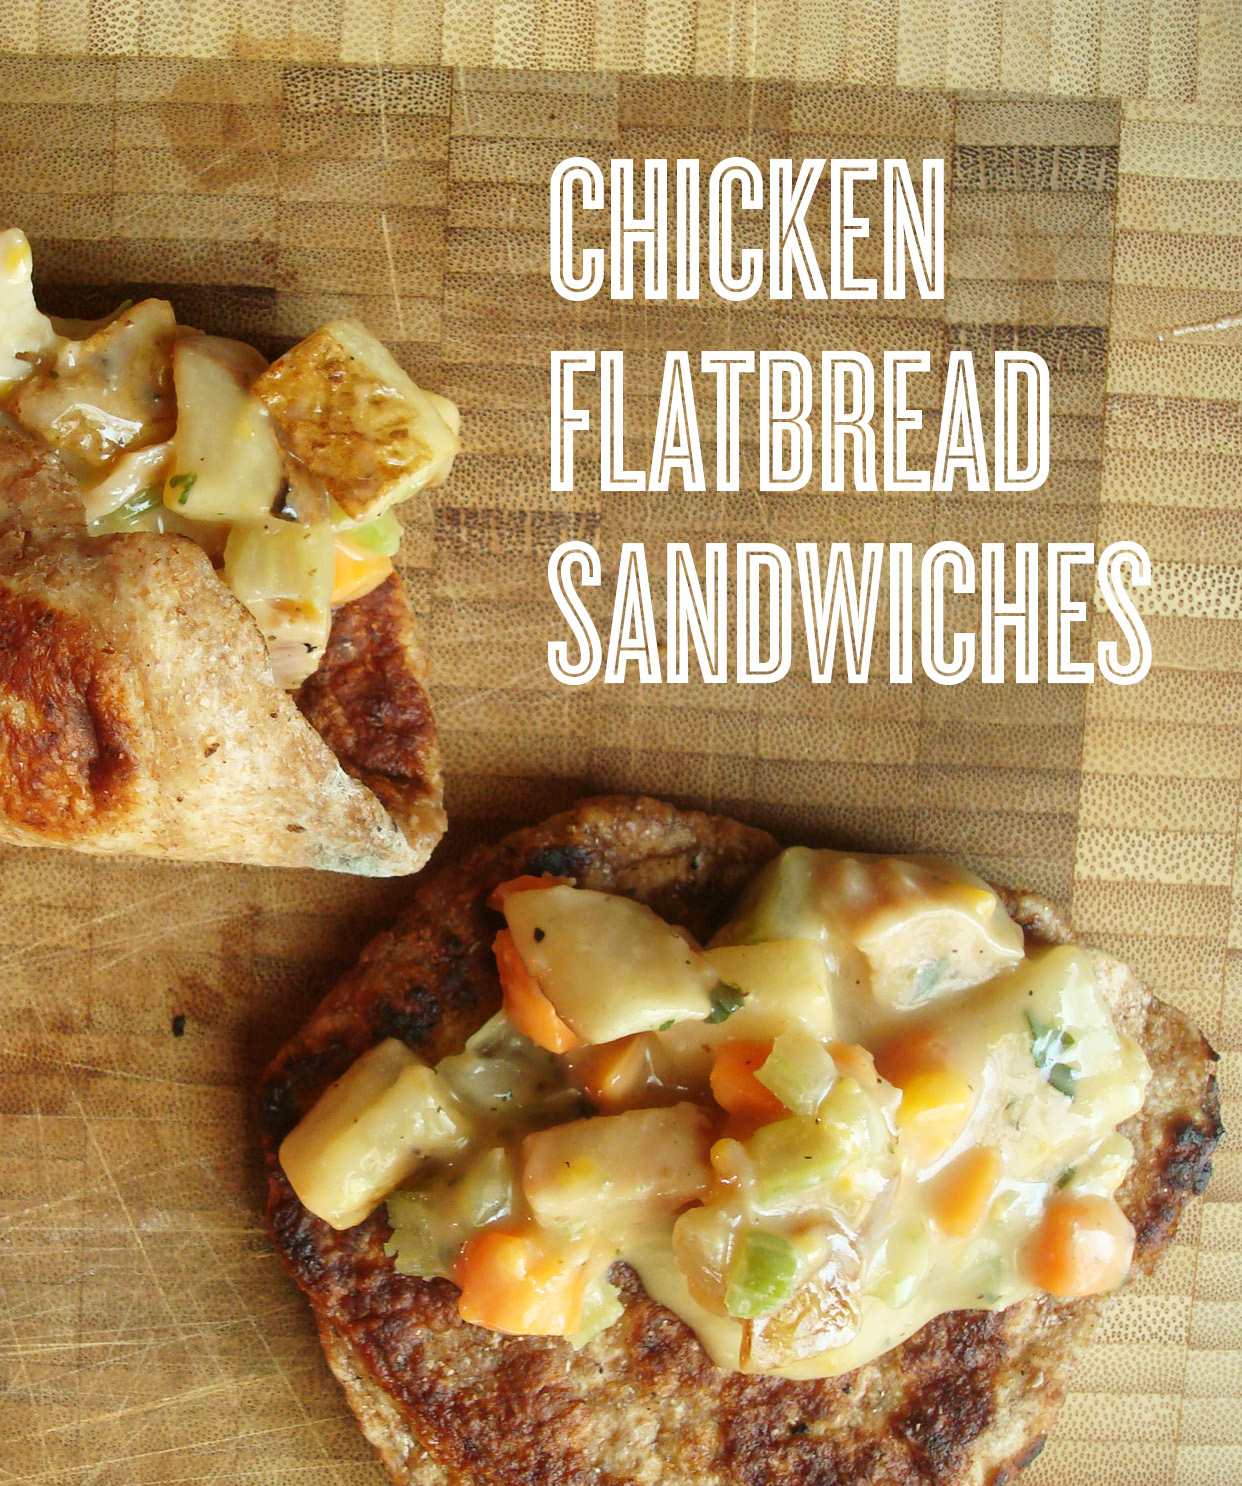 Chicken flatbread sandwiches